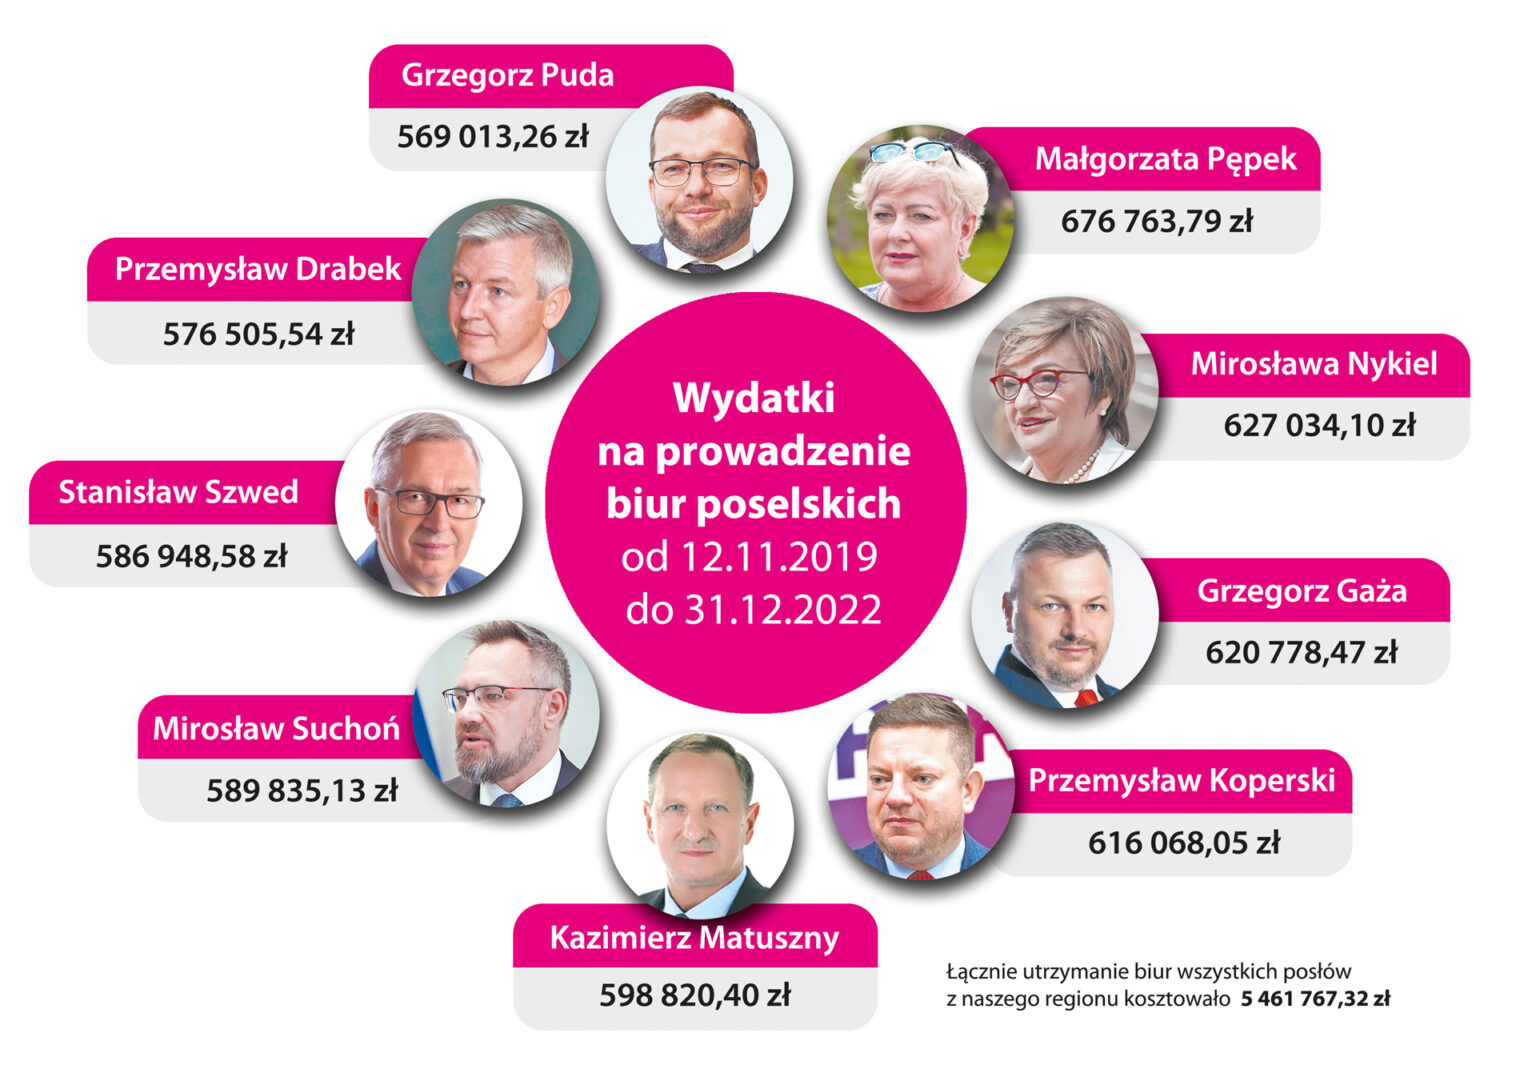 beskidzka24.pl – Rozrzutny jak poseł? Oto, kto jest najlepszym pracodawcą i najemcą, a kto największym gadżeciarzem i florystą!